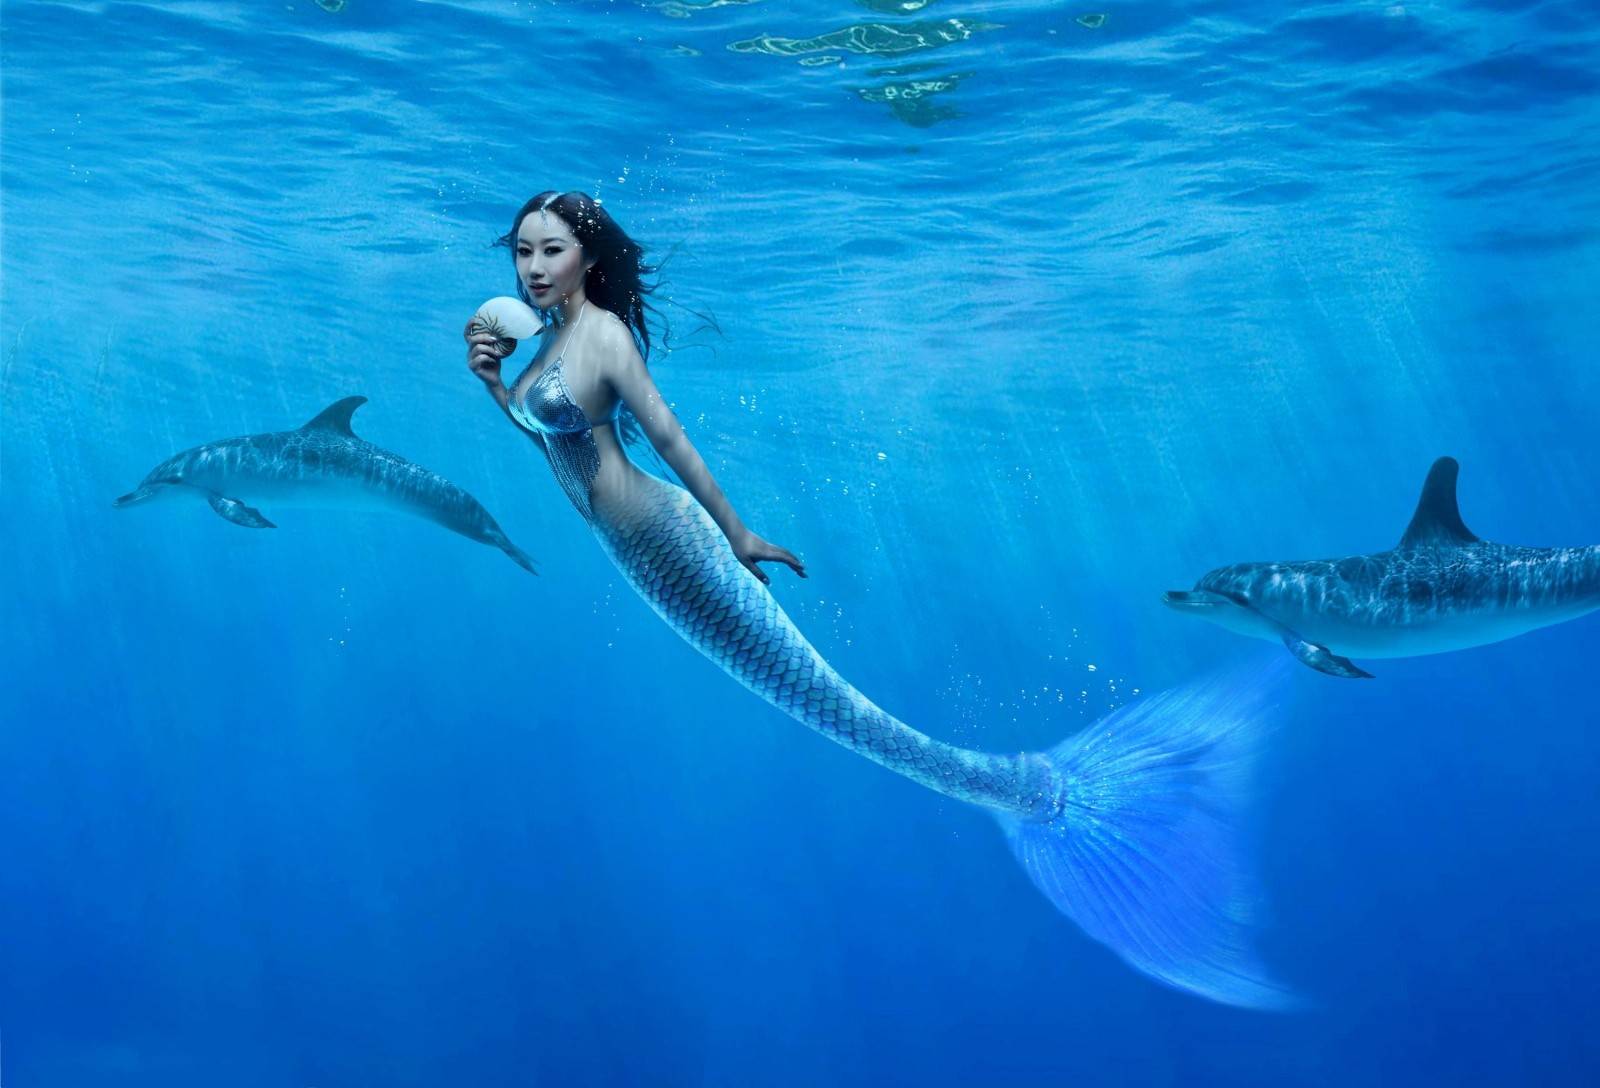 real mermaids